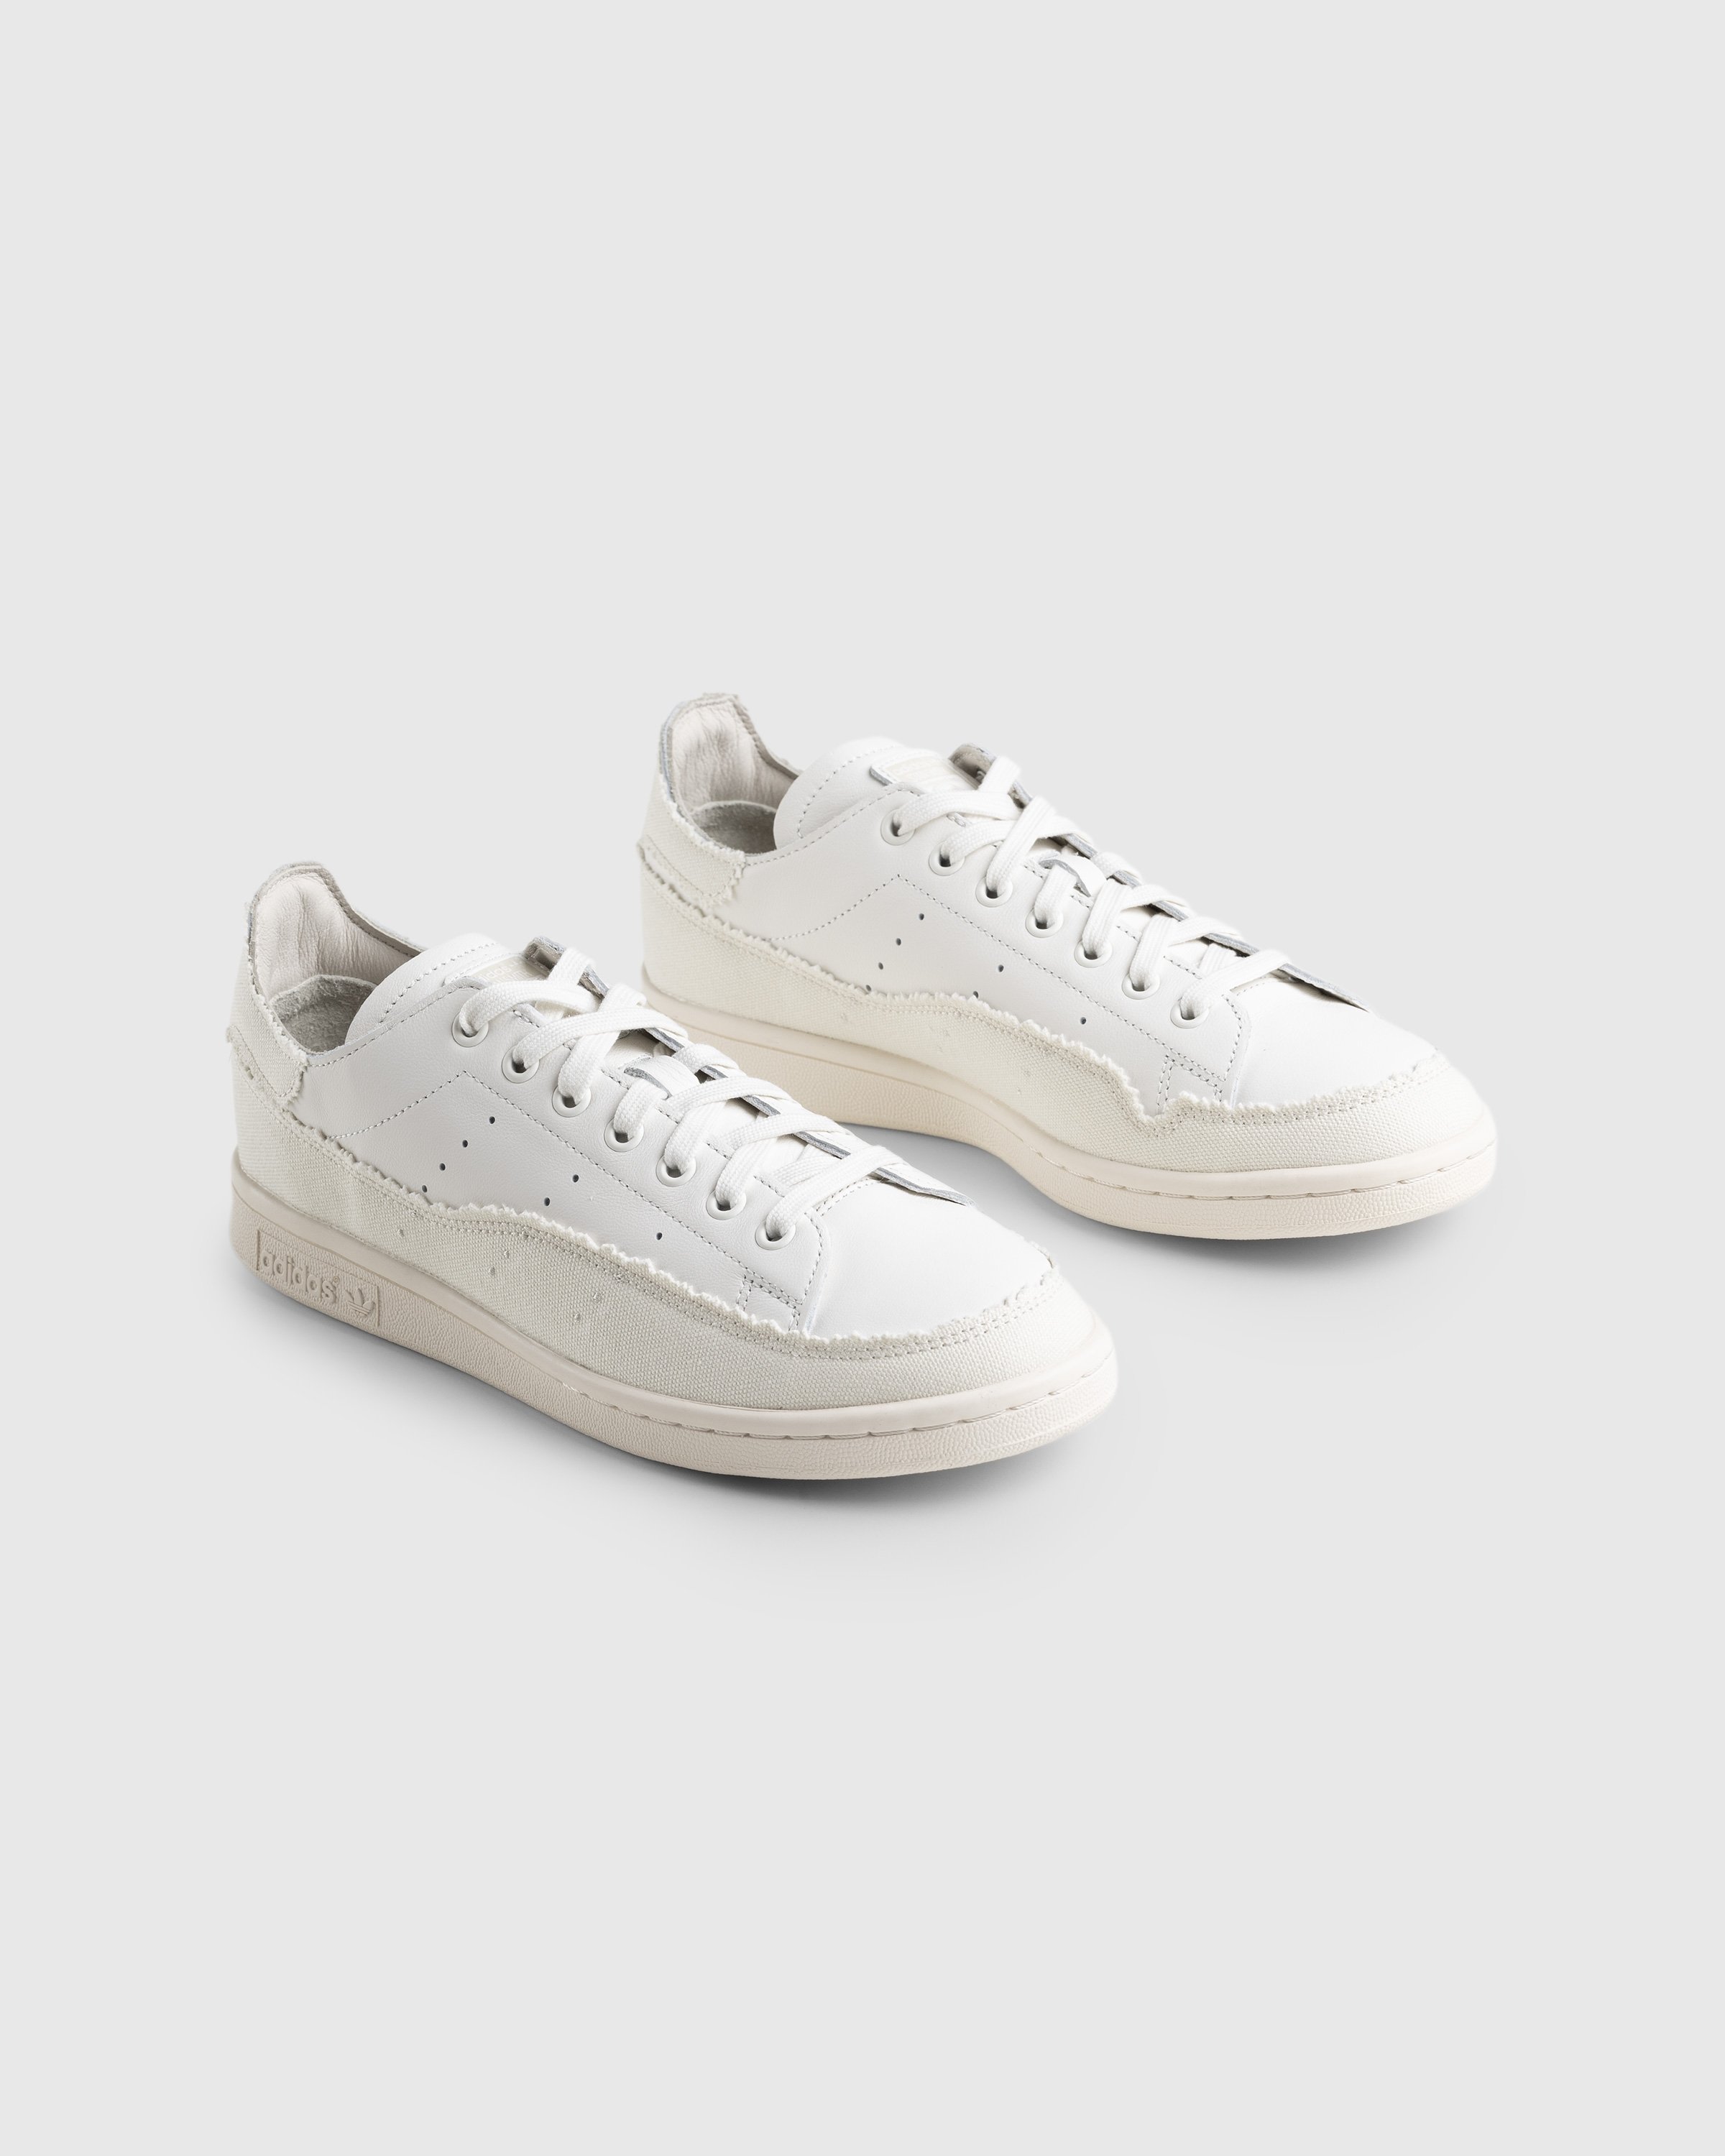 Adidas - Stan Smith Recon White - Footwear - White - Image 3